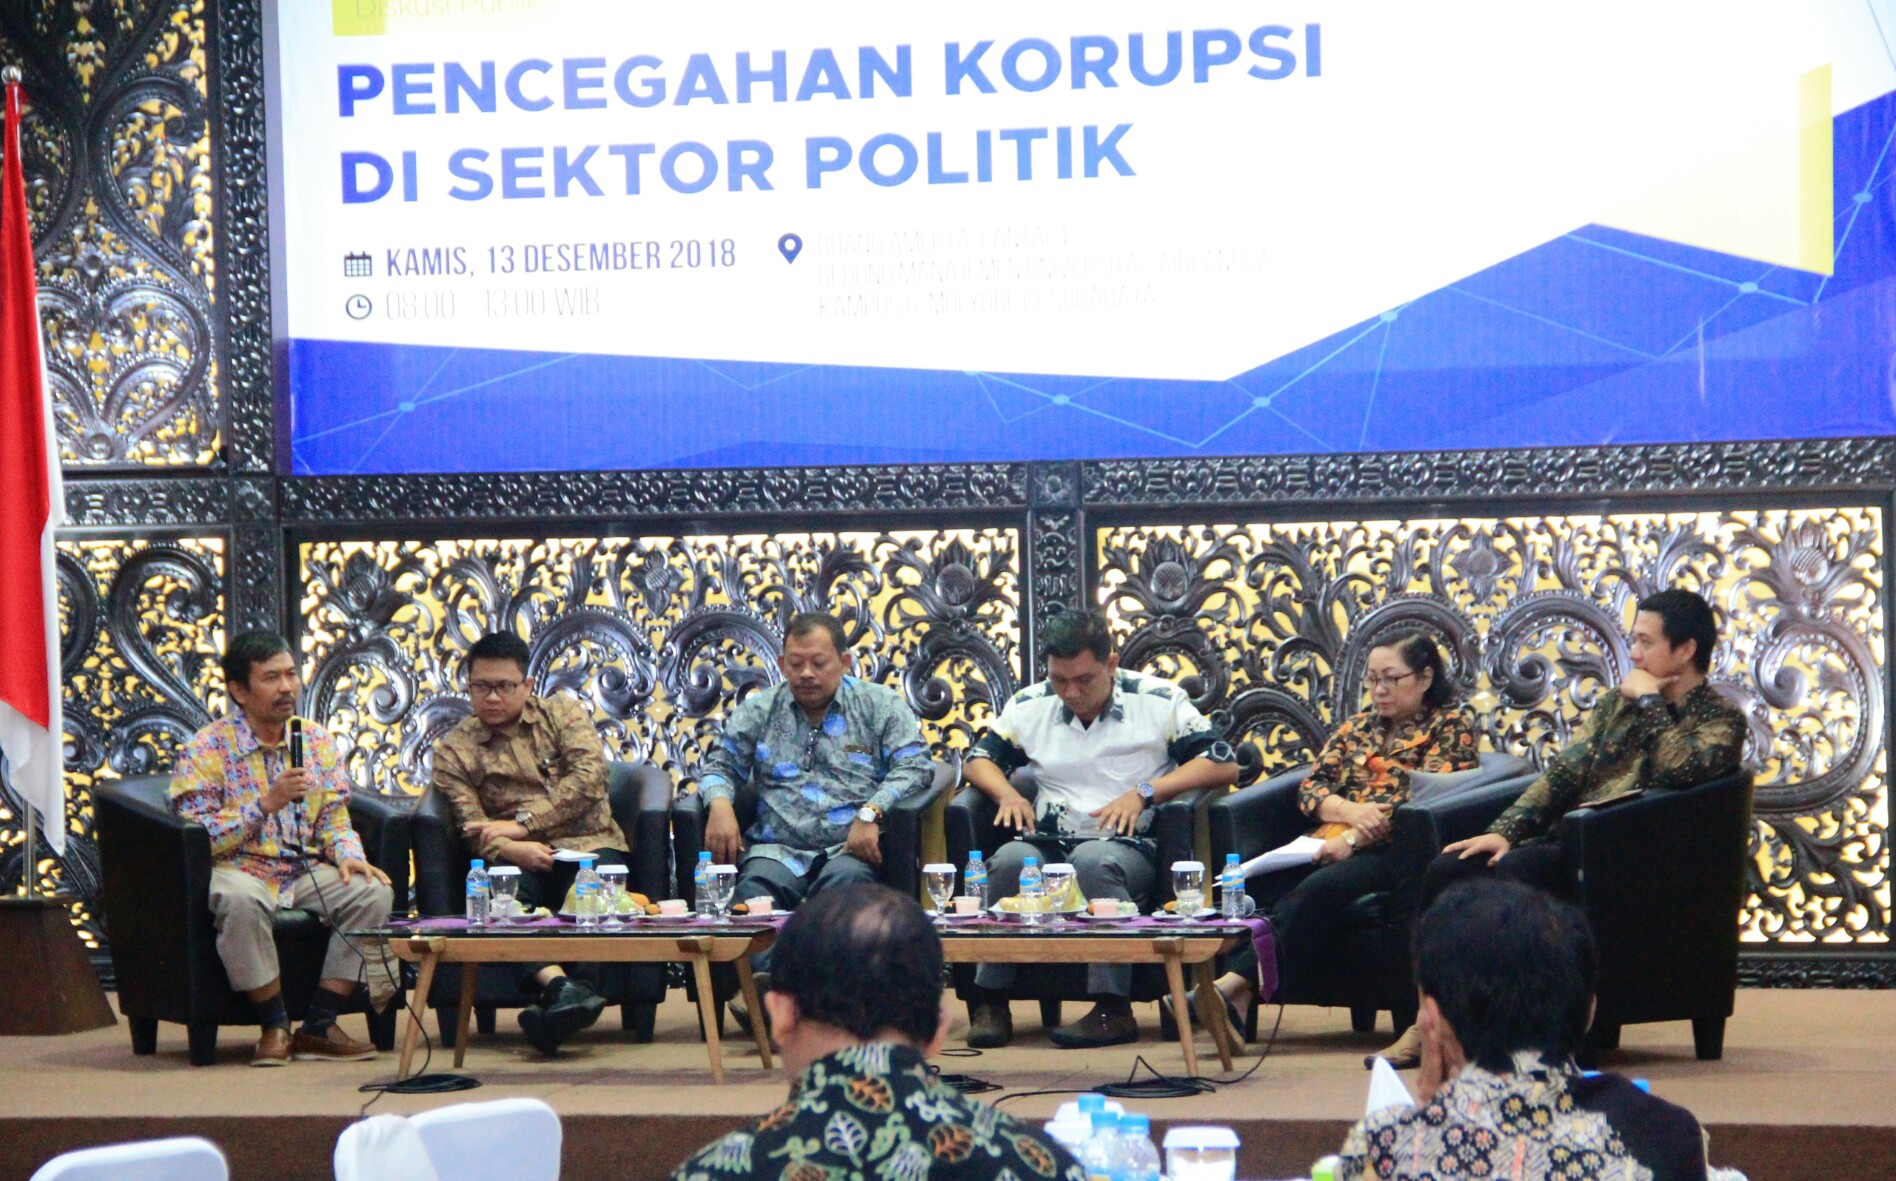 Acara diskusi publik bertama 'Pencegahan Korupsi di Sektor Politik' yang diselenggarakan di Unair kampus C Mulyorejo, Kamis 13 Desember 2018. (Foto: Amanah/ngopibareng.id)